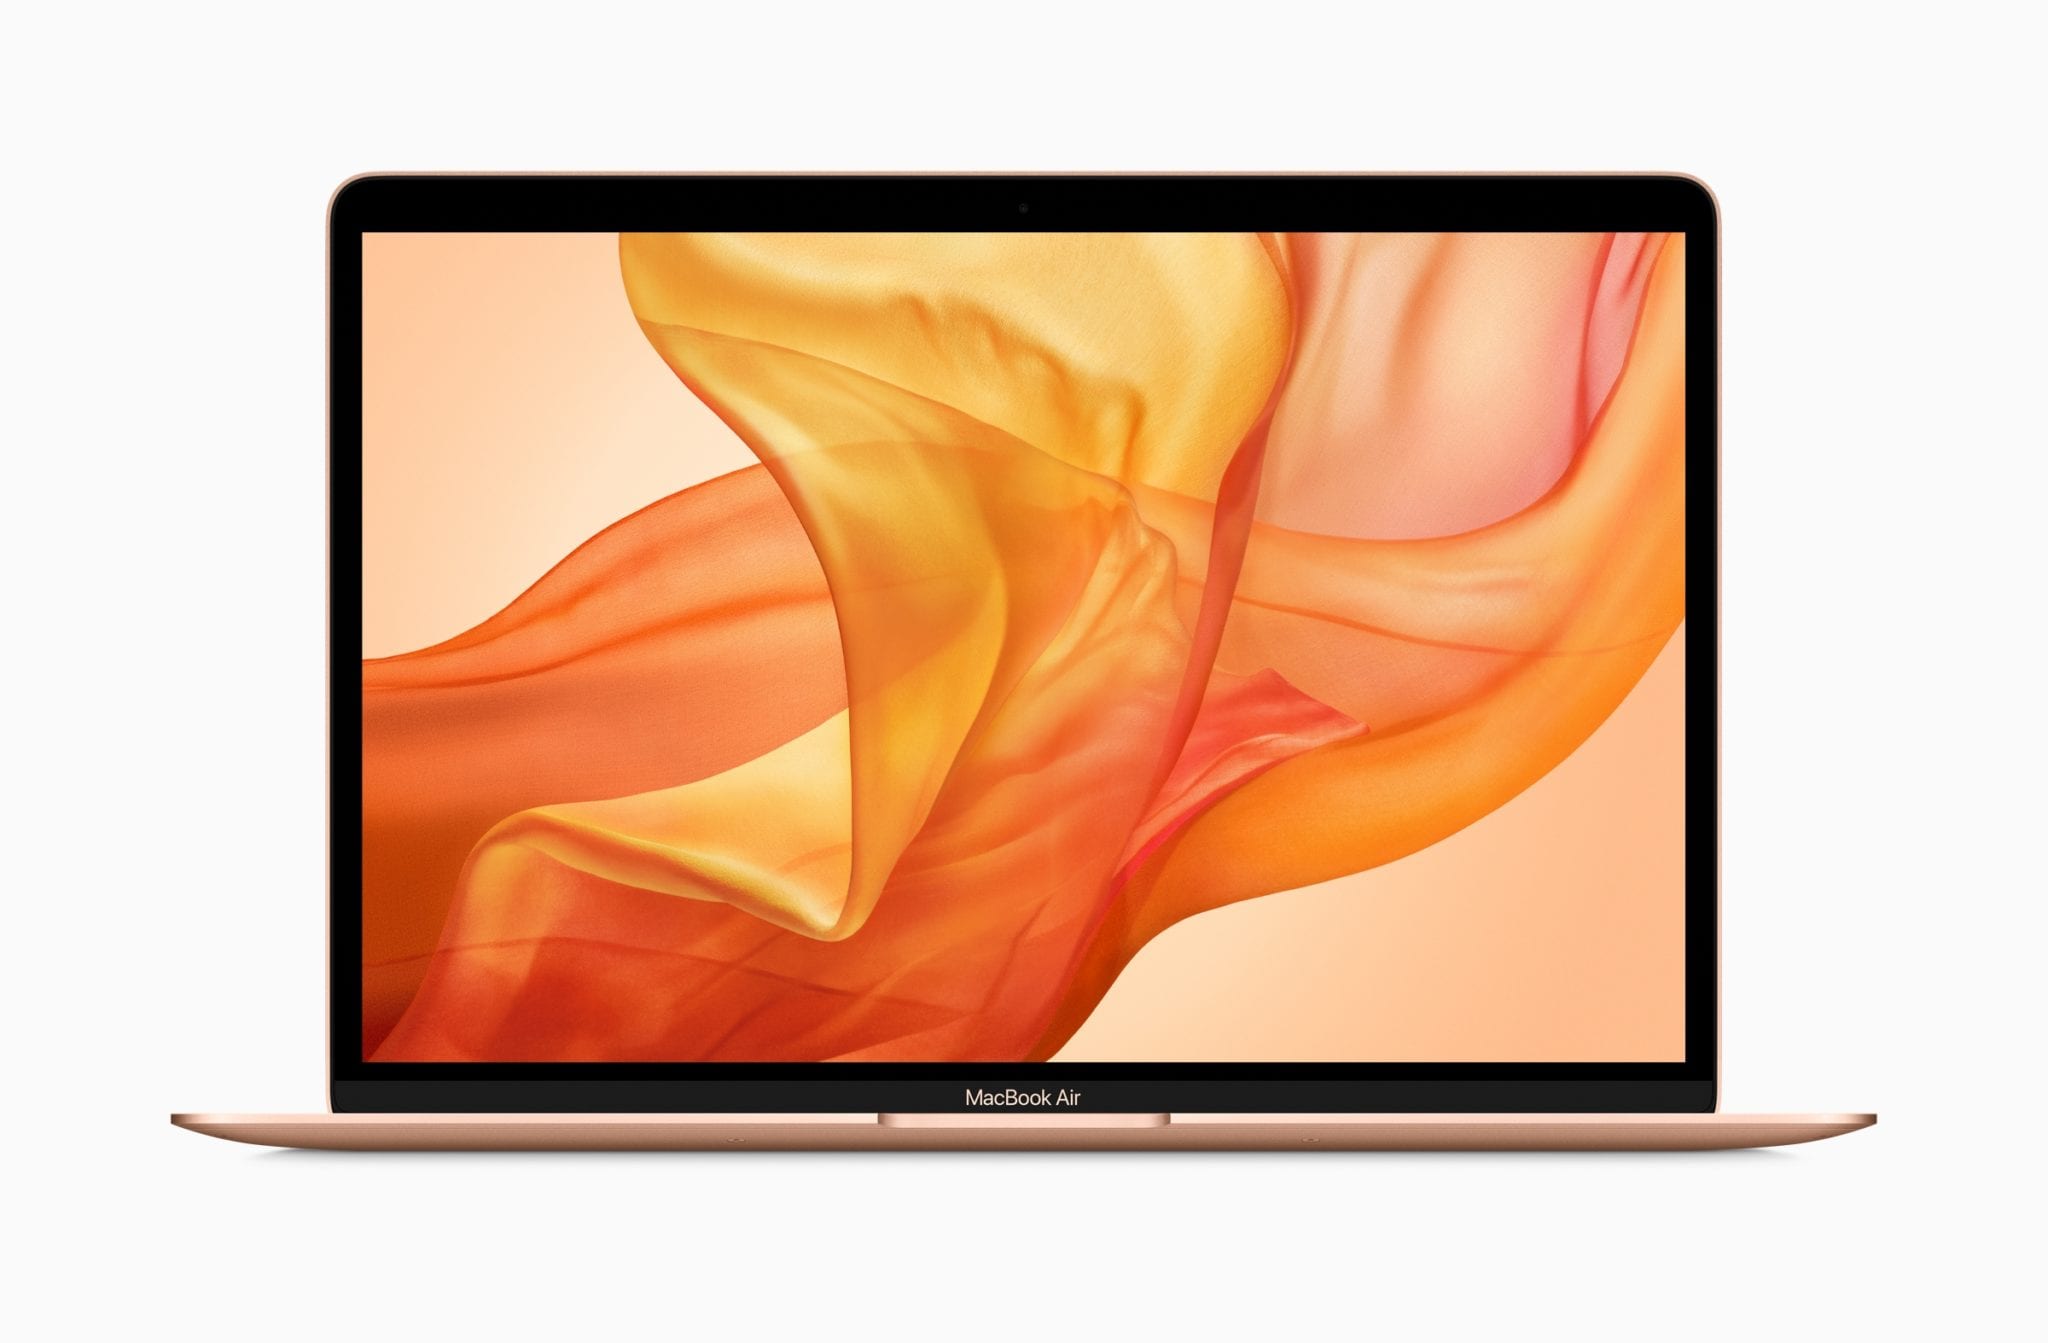 New MacBook Air - Retina Display